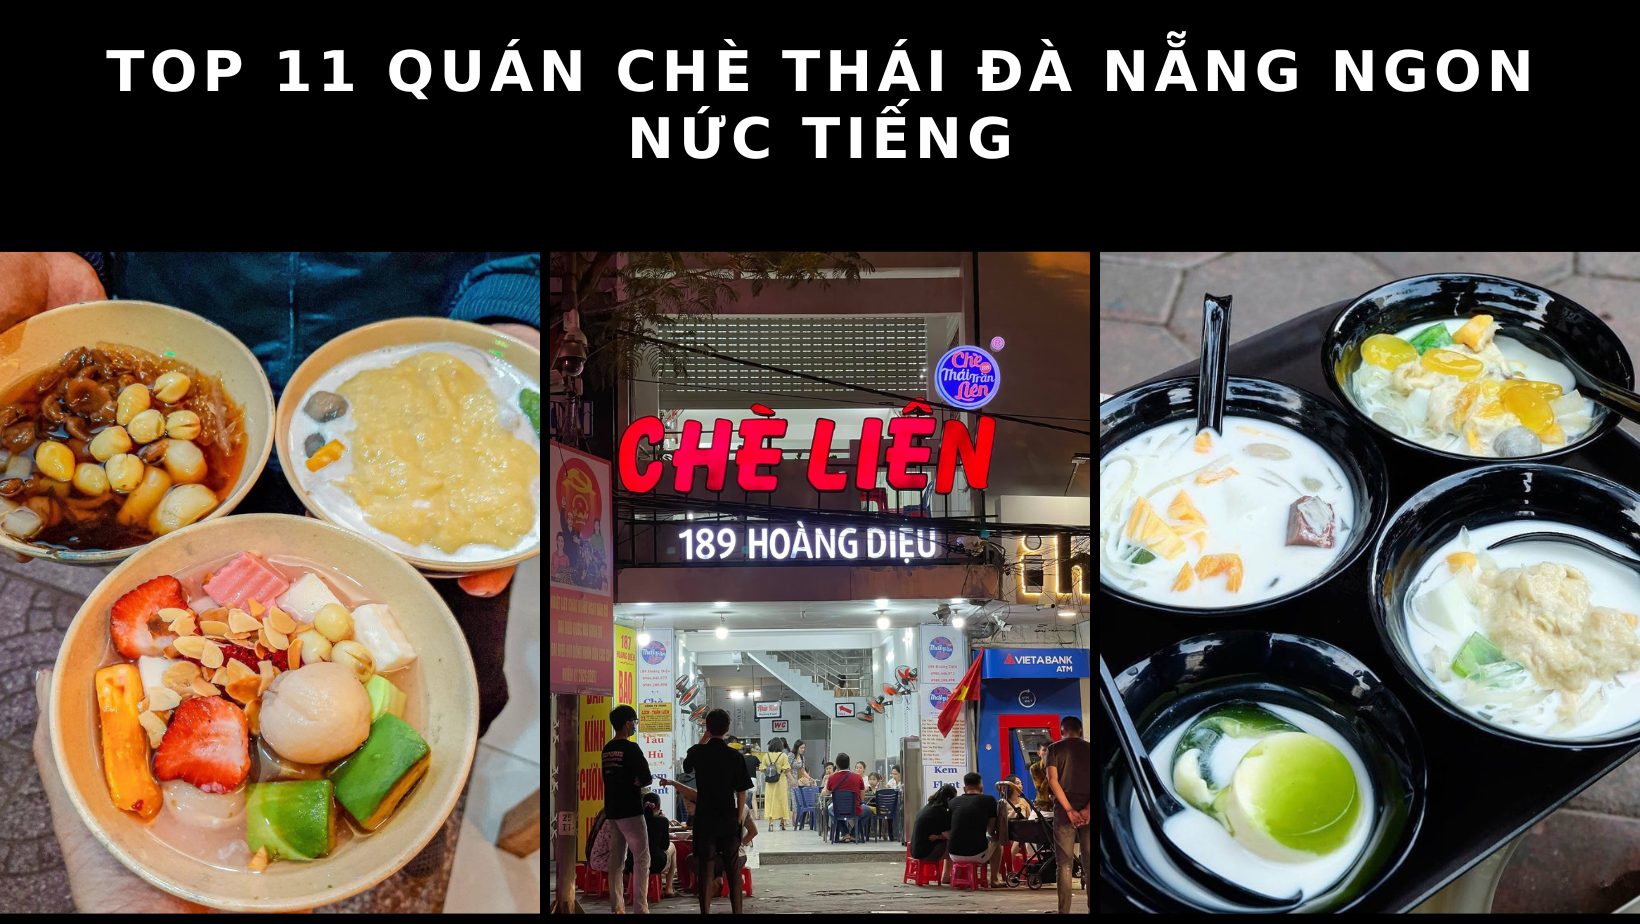 Top 18 quán trà sữa Đà Nẵng ngon, view đẹp thu hút giới trẻ